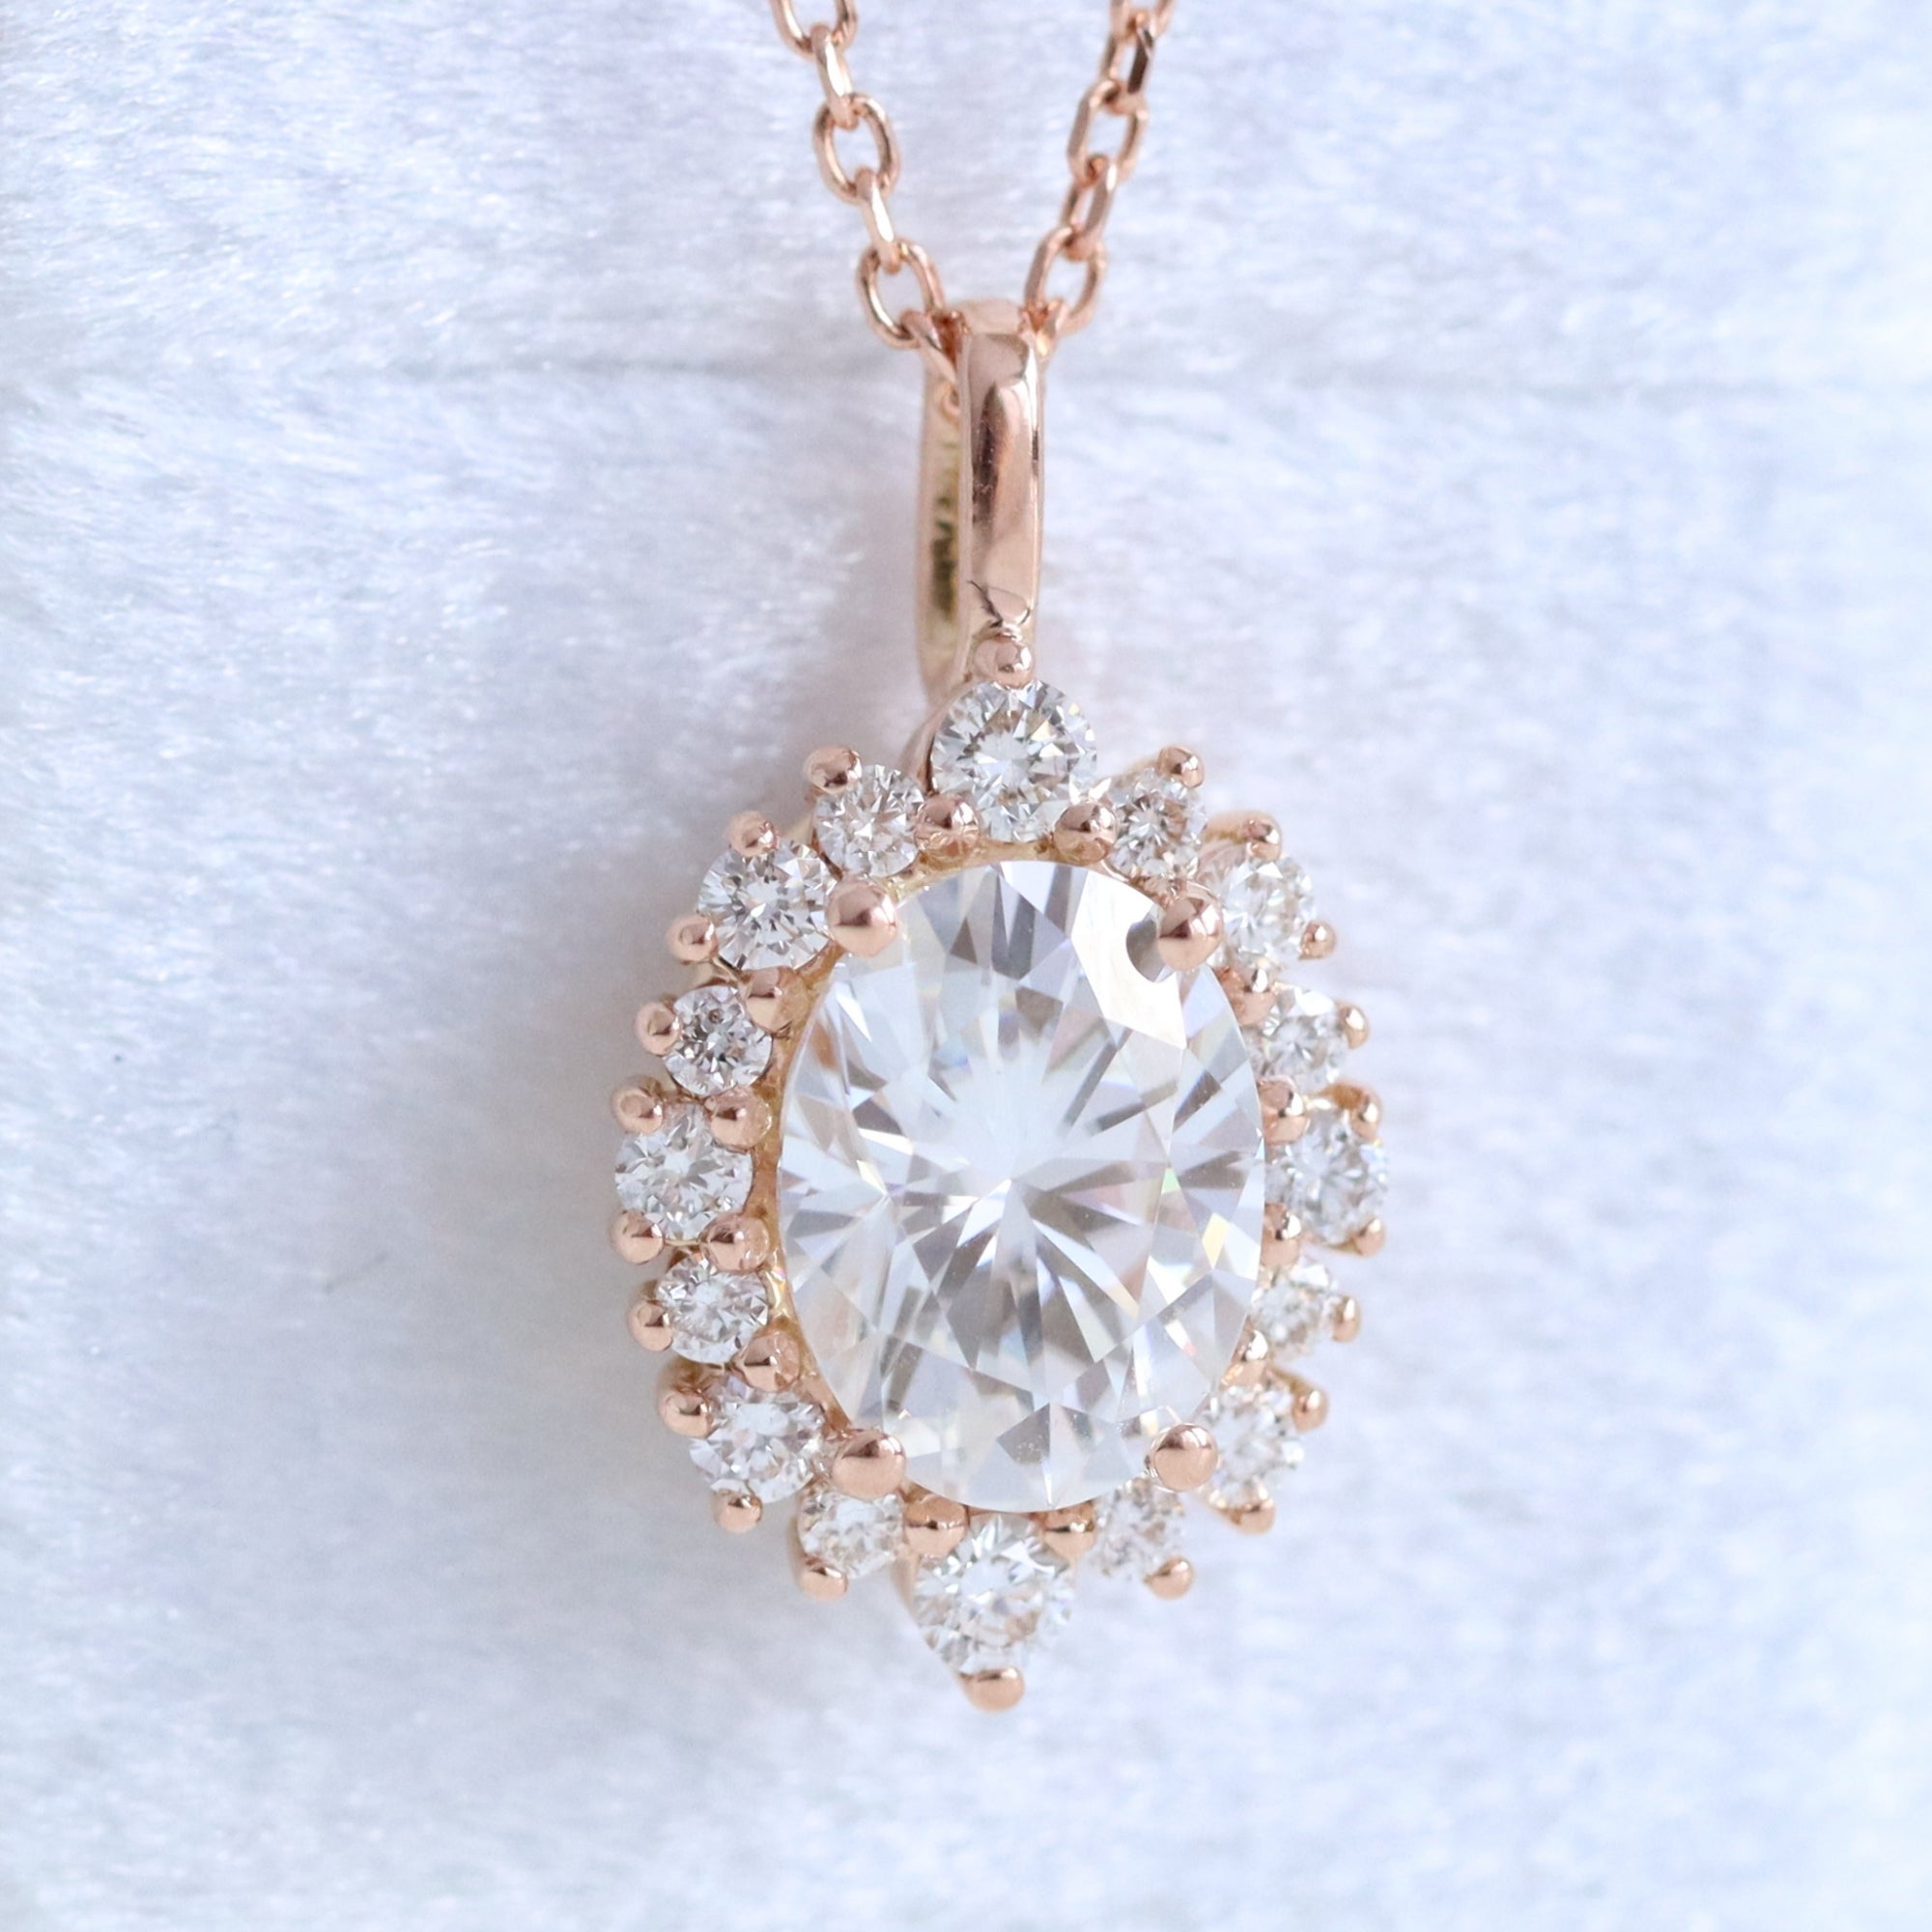 Pink diamond necklace  Pink diamond necklaces, Pink diamond, Diamond  necklace designs